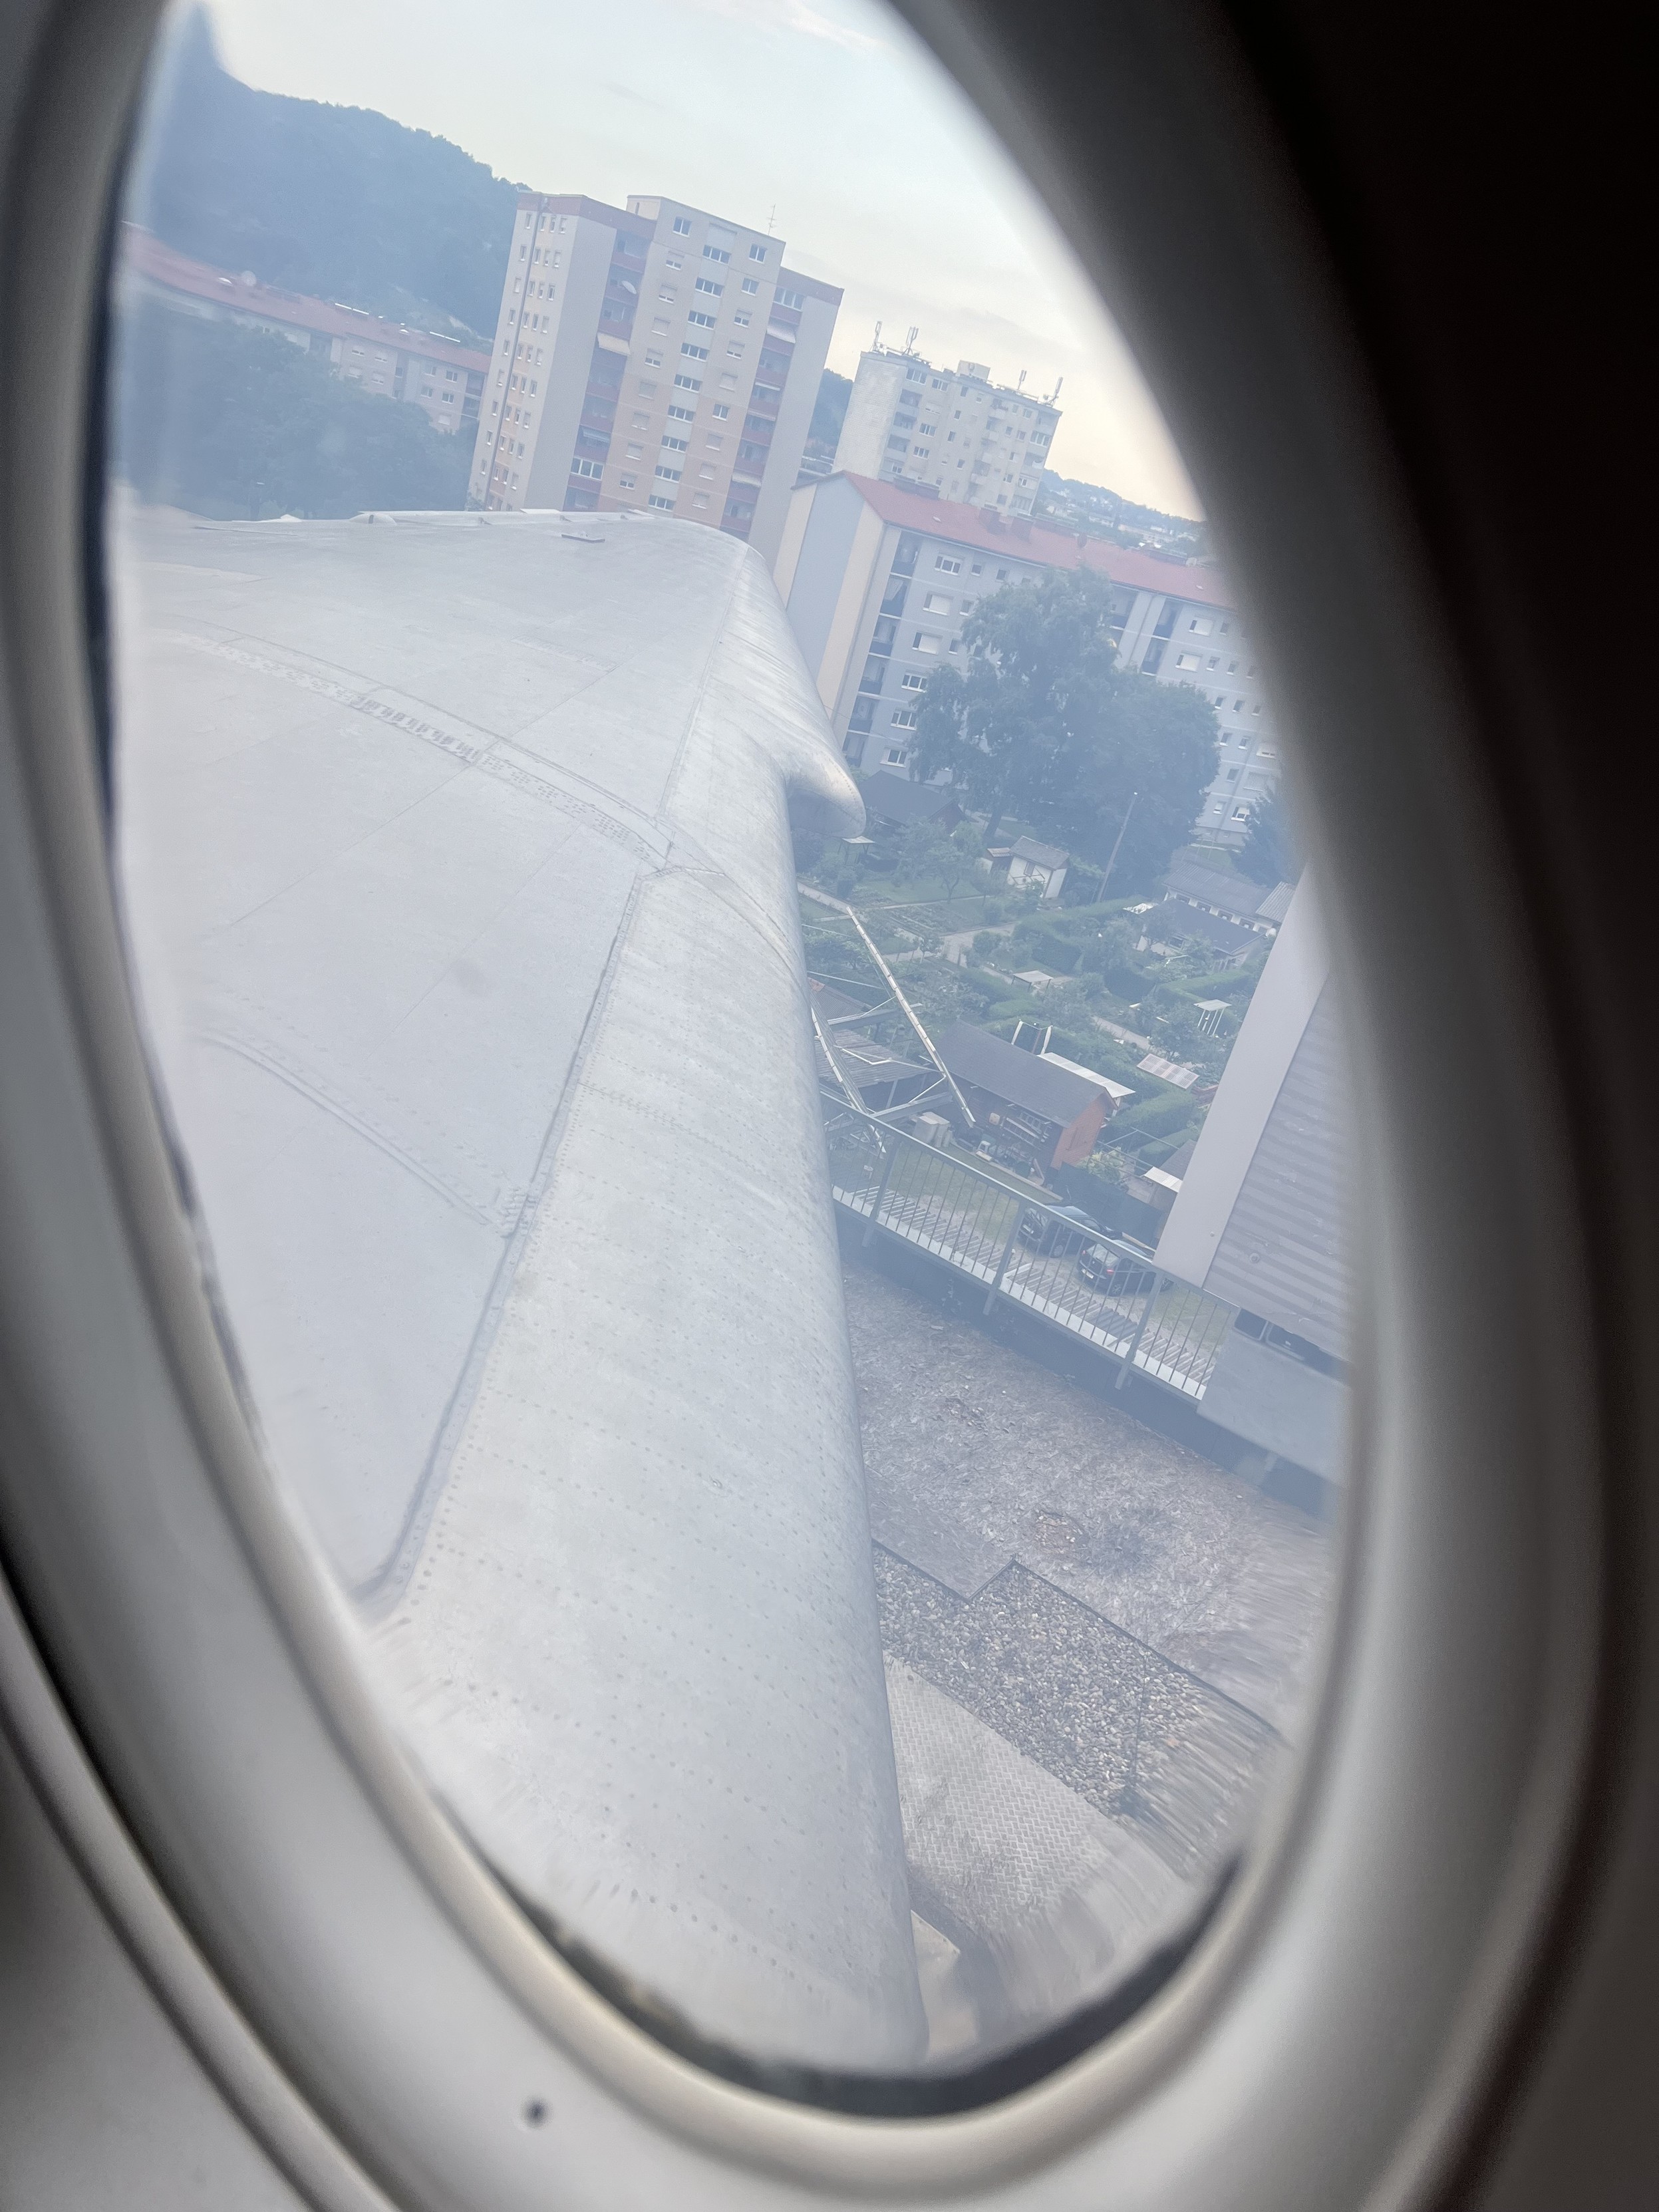 Blick aus einem Flugzeugfenster auf die Tragfläche des Flugzeugs und mehrere Wohngebäude in einer Stadt.